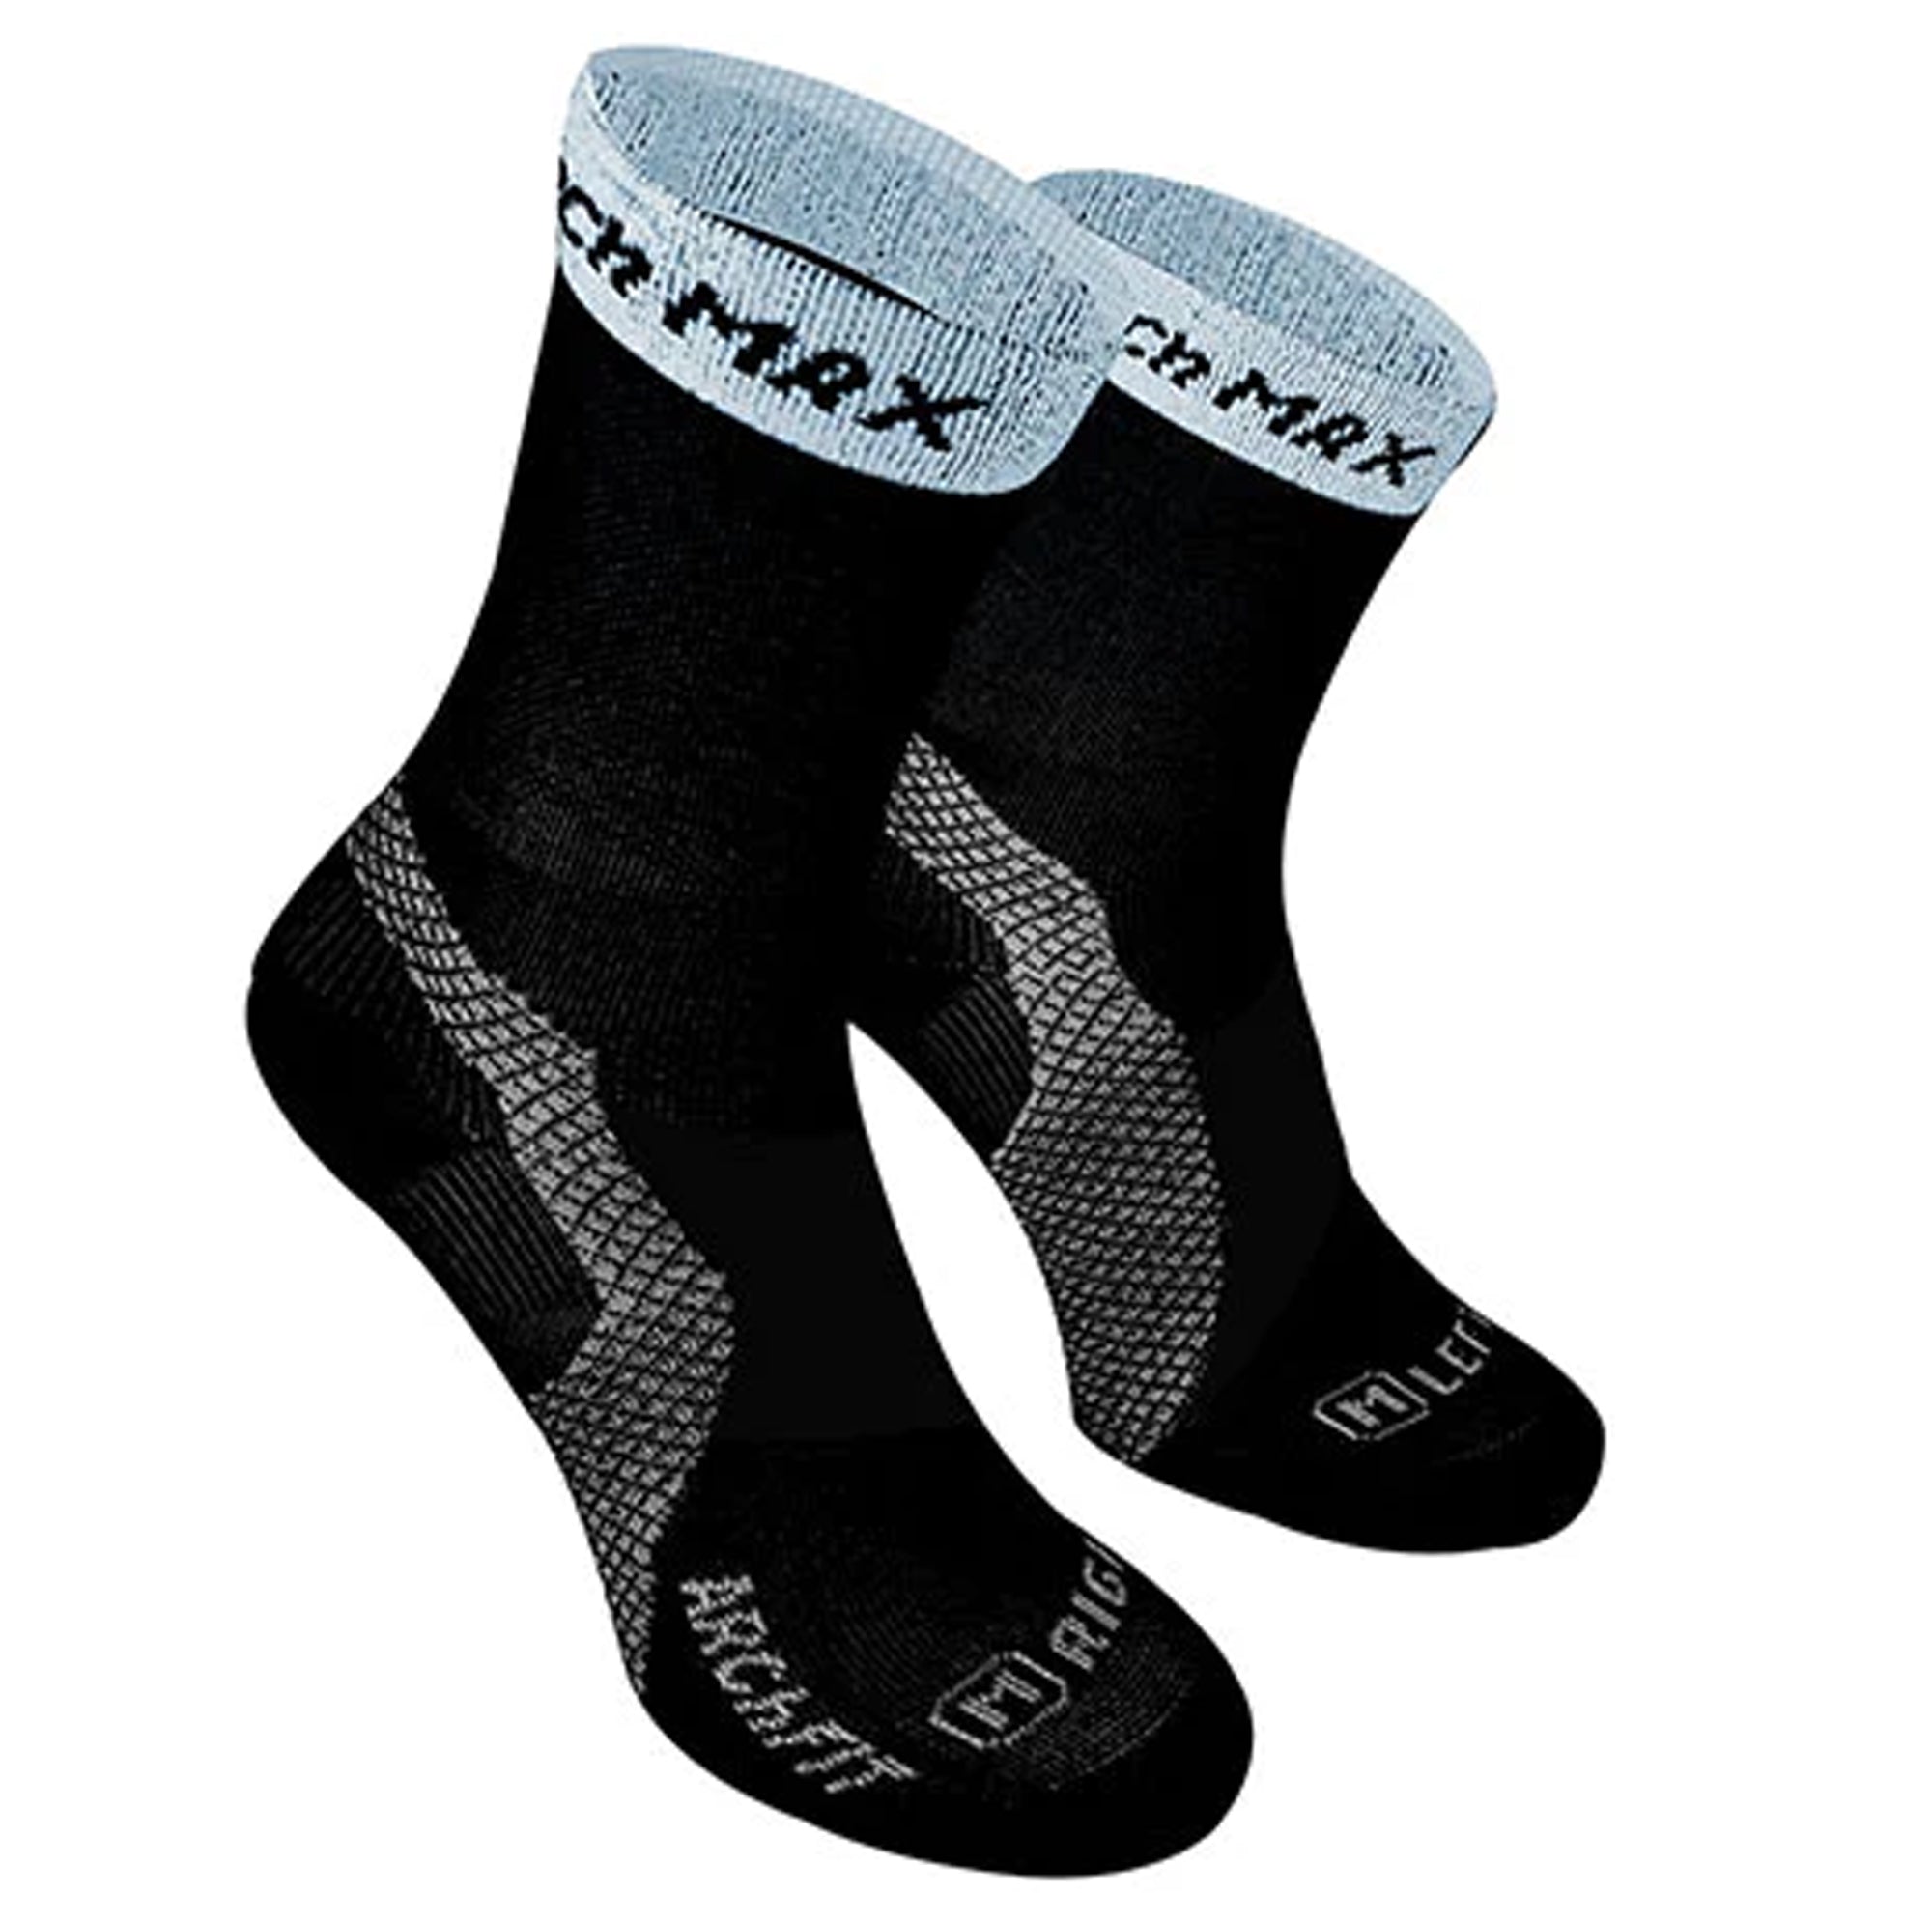 Archfit Run sports socks